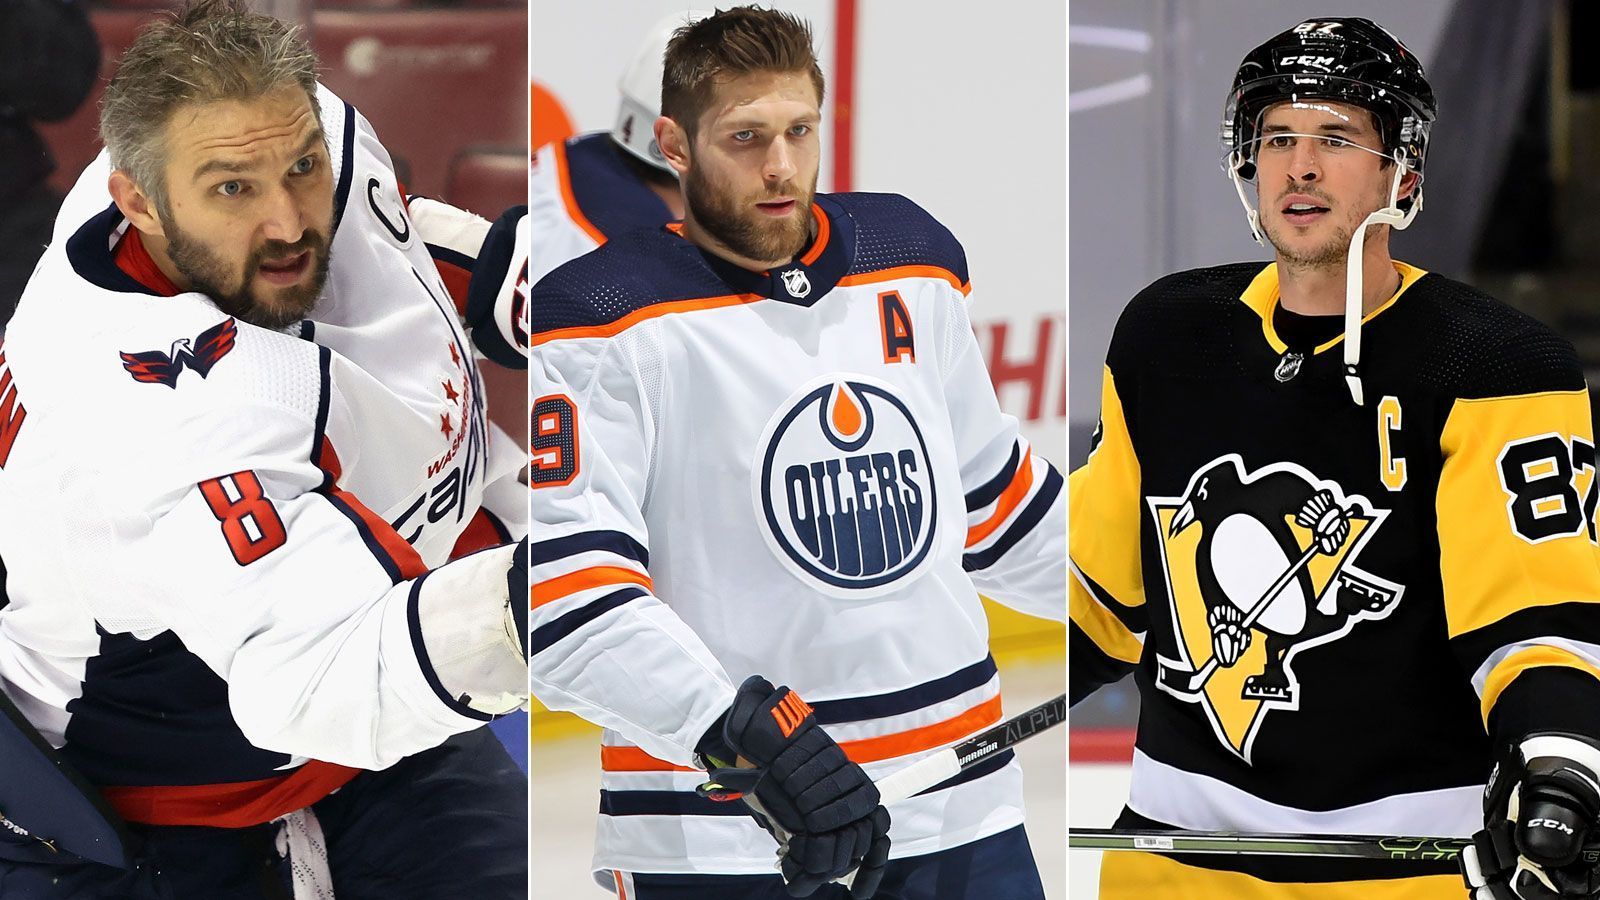 
                <strong>McDavid, Draisaitl, Crosby: Das sind die Superstars der NHL</strong><br>
                Die NHL-Saison 2021/22 ist in vollem Gange. Welche Spieler beeindrucken die Fans? Wir zeigen die Superstars der besten Eishockey-Liga der Welt.
              